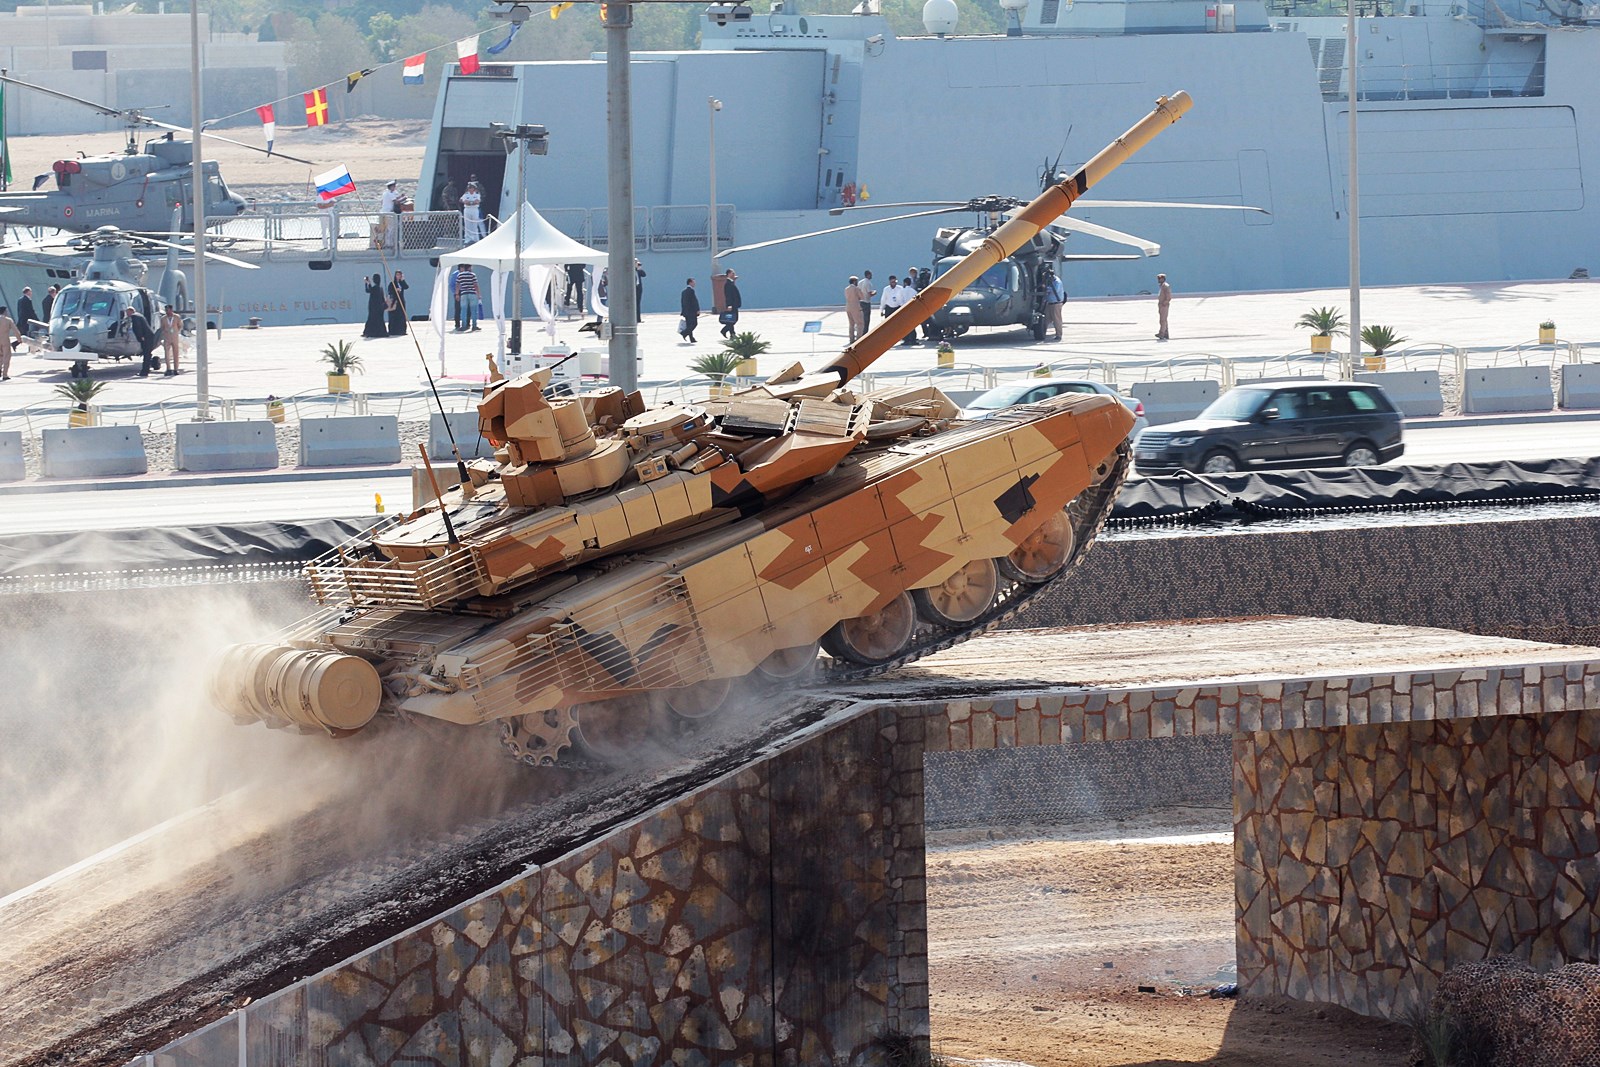 1/35 现代俄罗斯 T-90MS 主战坦克2013-15年型 - 点击图像关闭